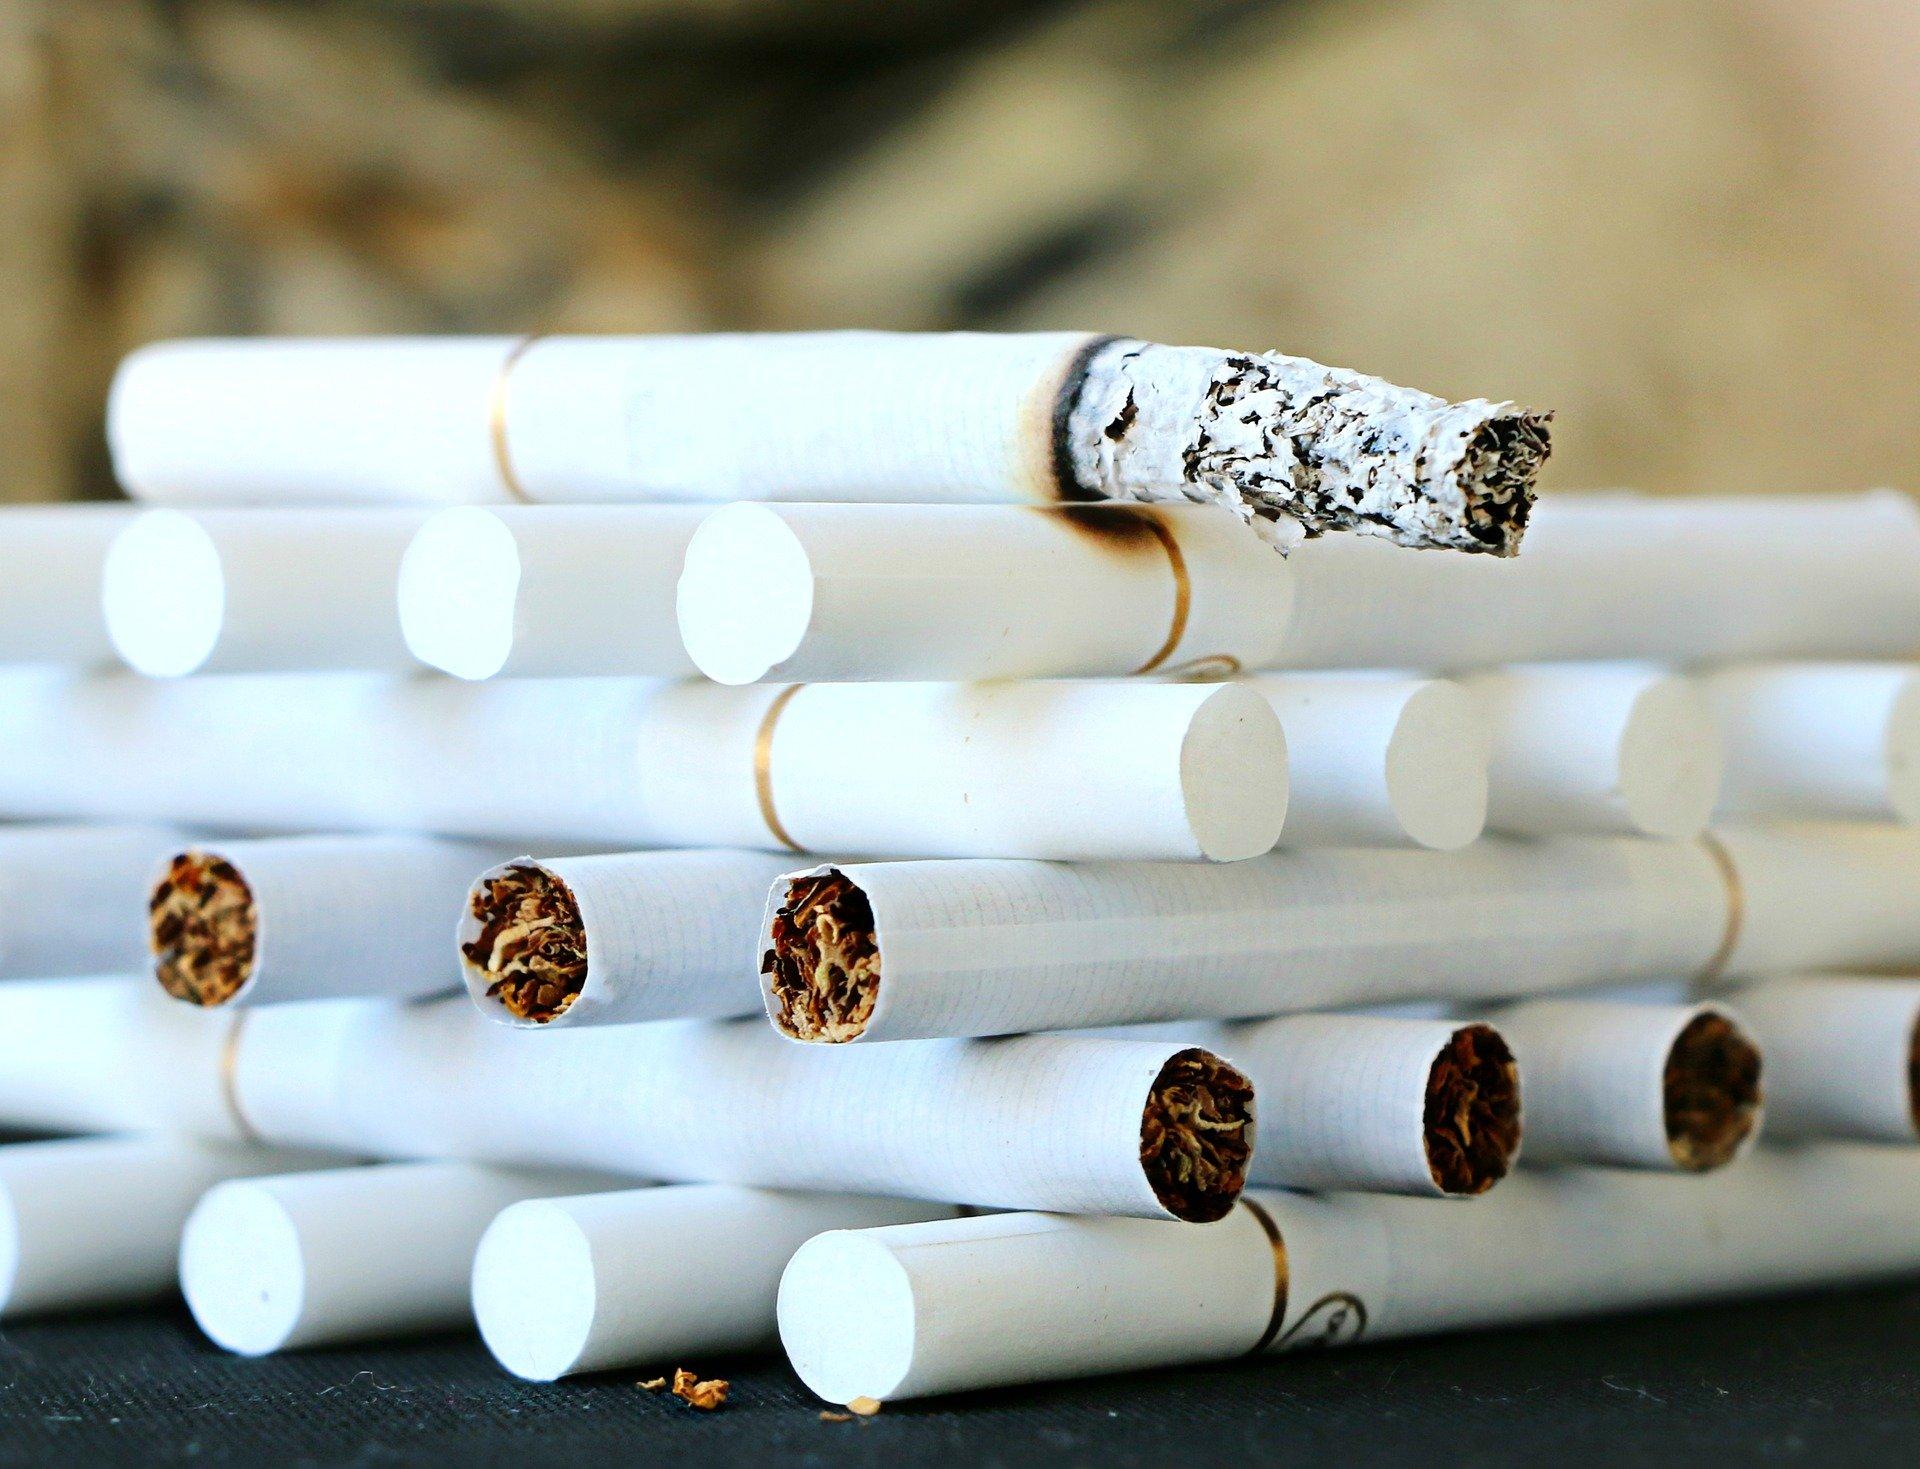 La historia del pueblo portugués donde los Reyes traen tabaco a los niños. Fuente de la imagen: Pixabay.